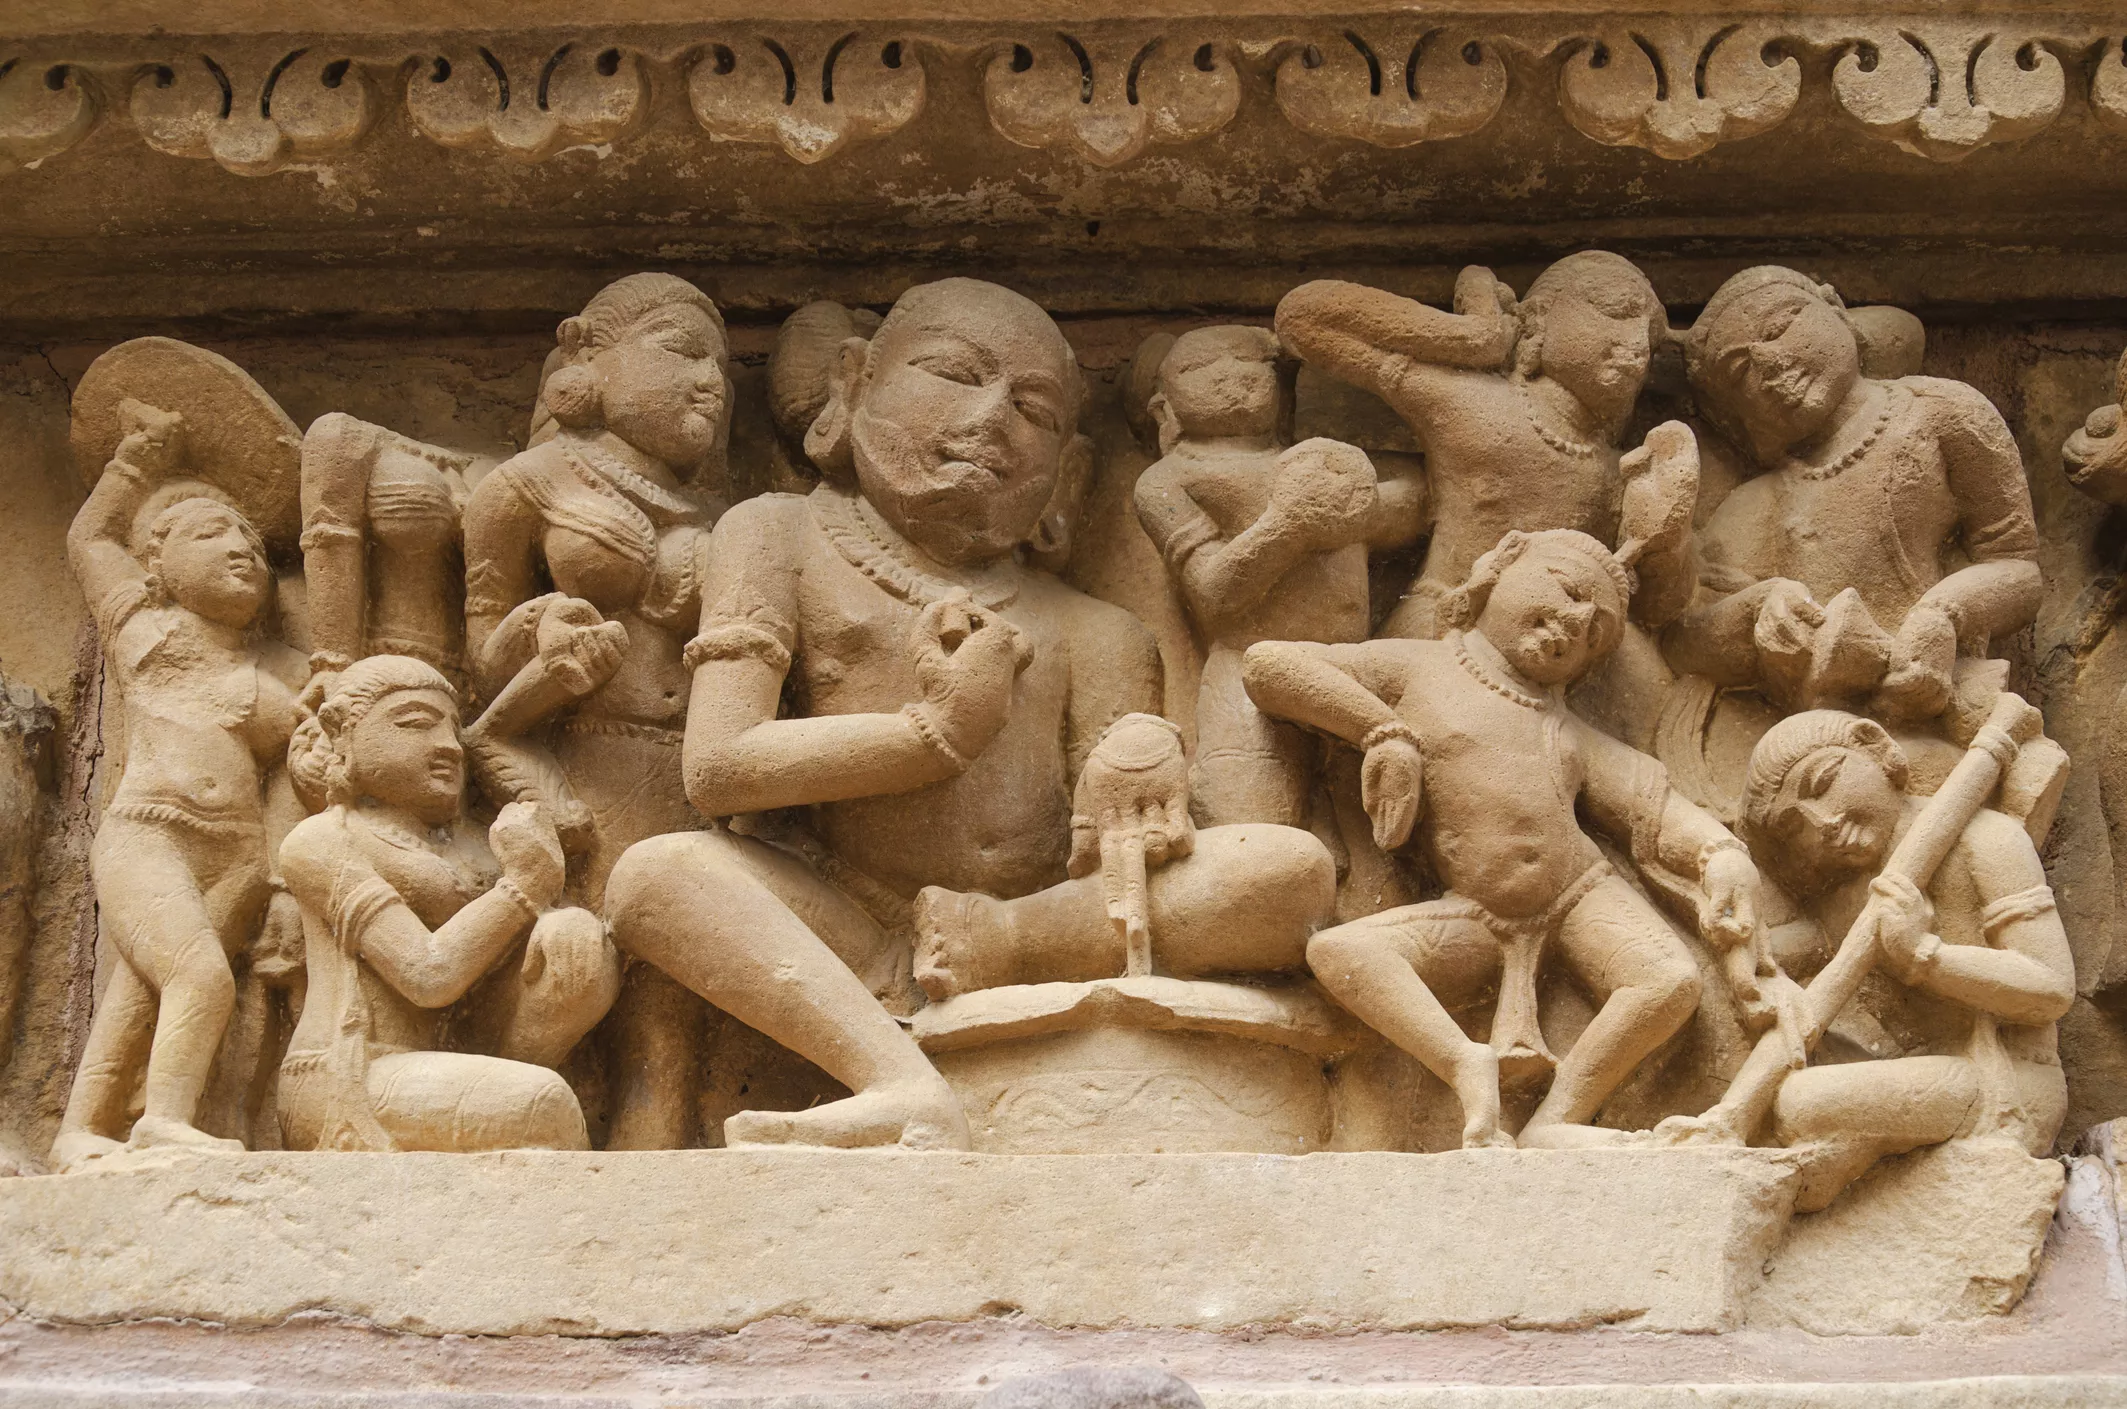 Els éssers celestials comparteixen espai amb les parelles que fan l’amor a les parets del temple de Kandariya Mahadev, que té més de nou-centes estàtues